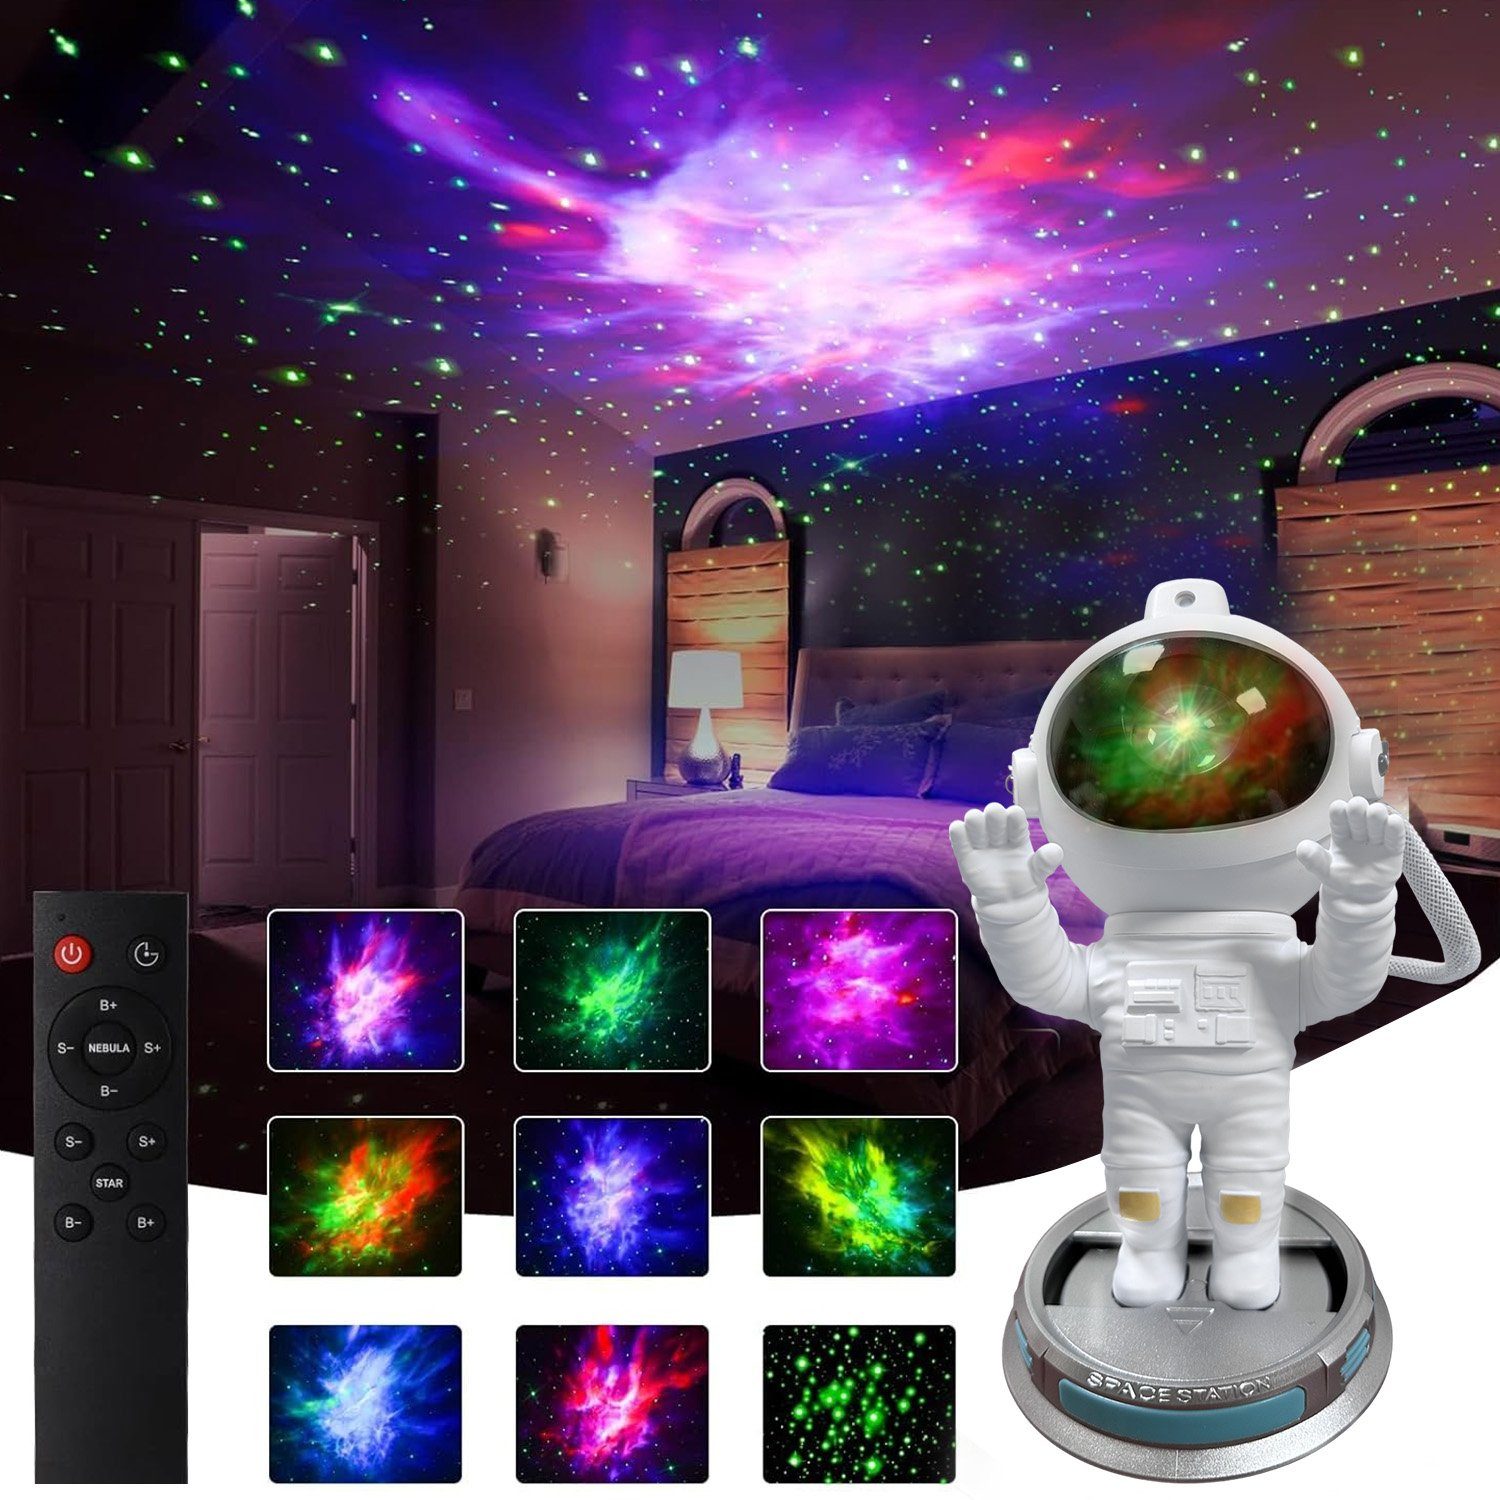 Rosnek LED Nachtlicht Starry Mond, Bluetooth Musikplayer, USB, Geschenke  für Kinder, LED, Rot, Grün, Blau, Weiß, LED-Projektionslicht, LED  Sternenhimmel Projektor, mit Fernbedienung